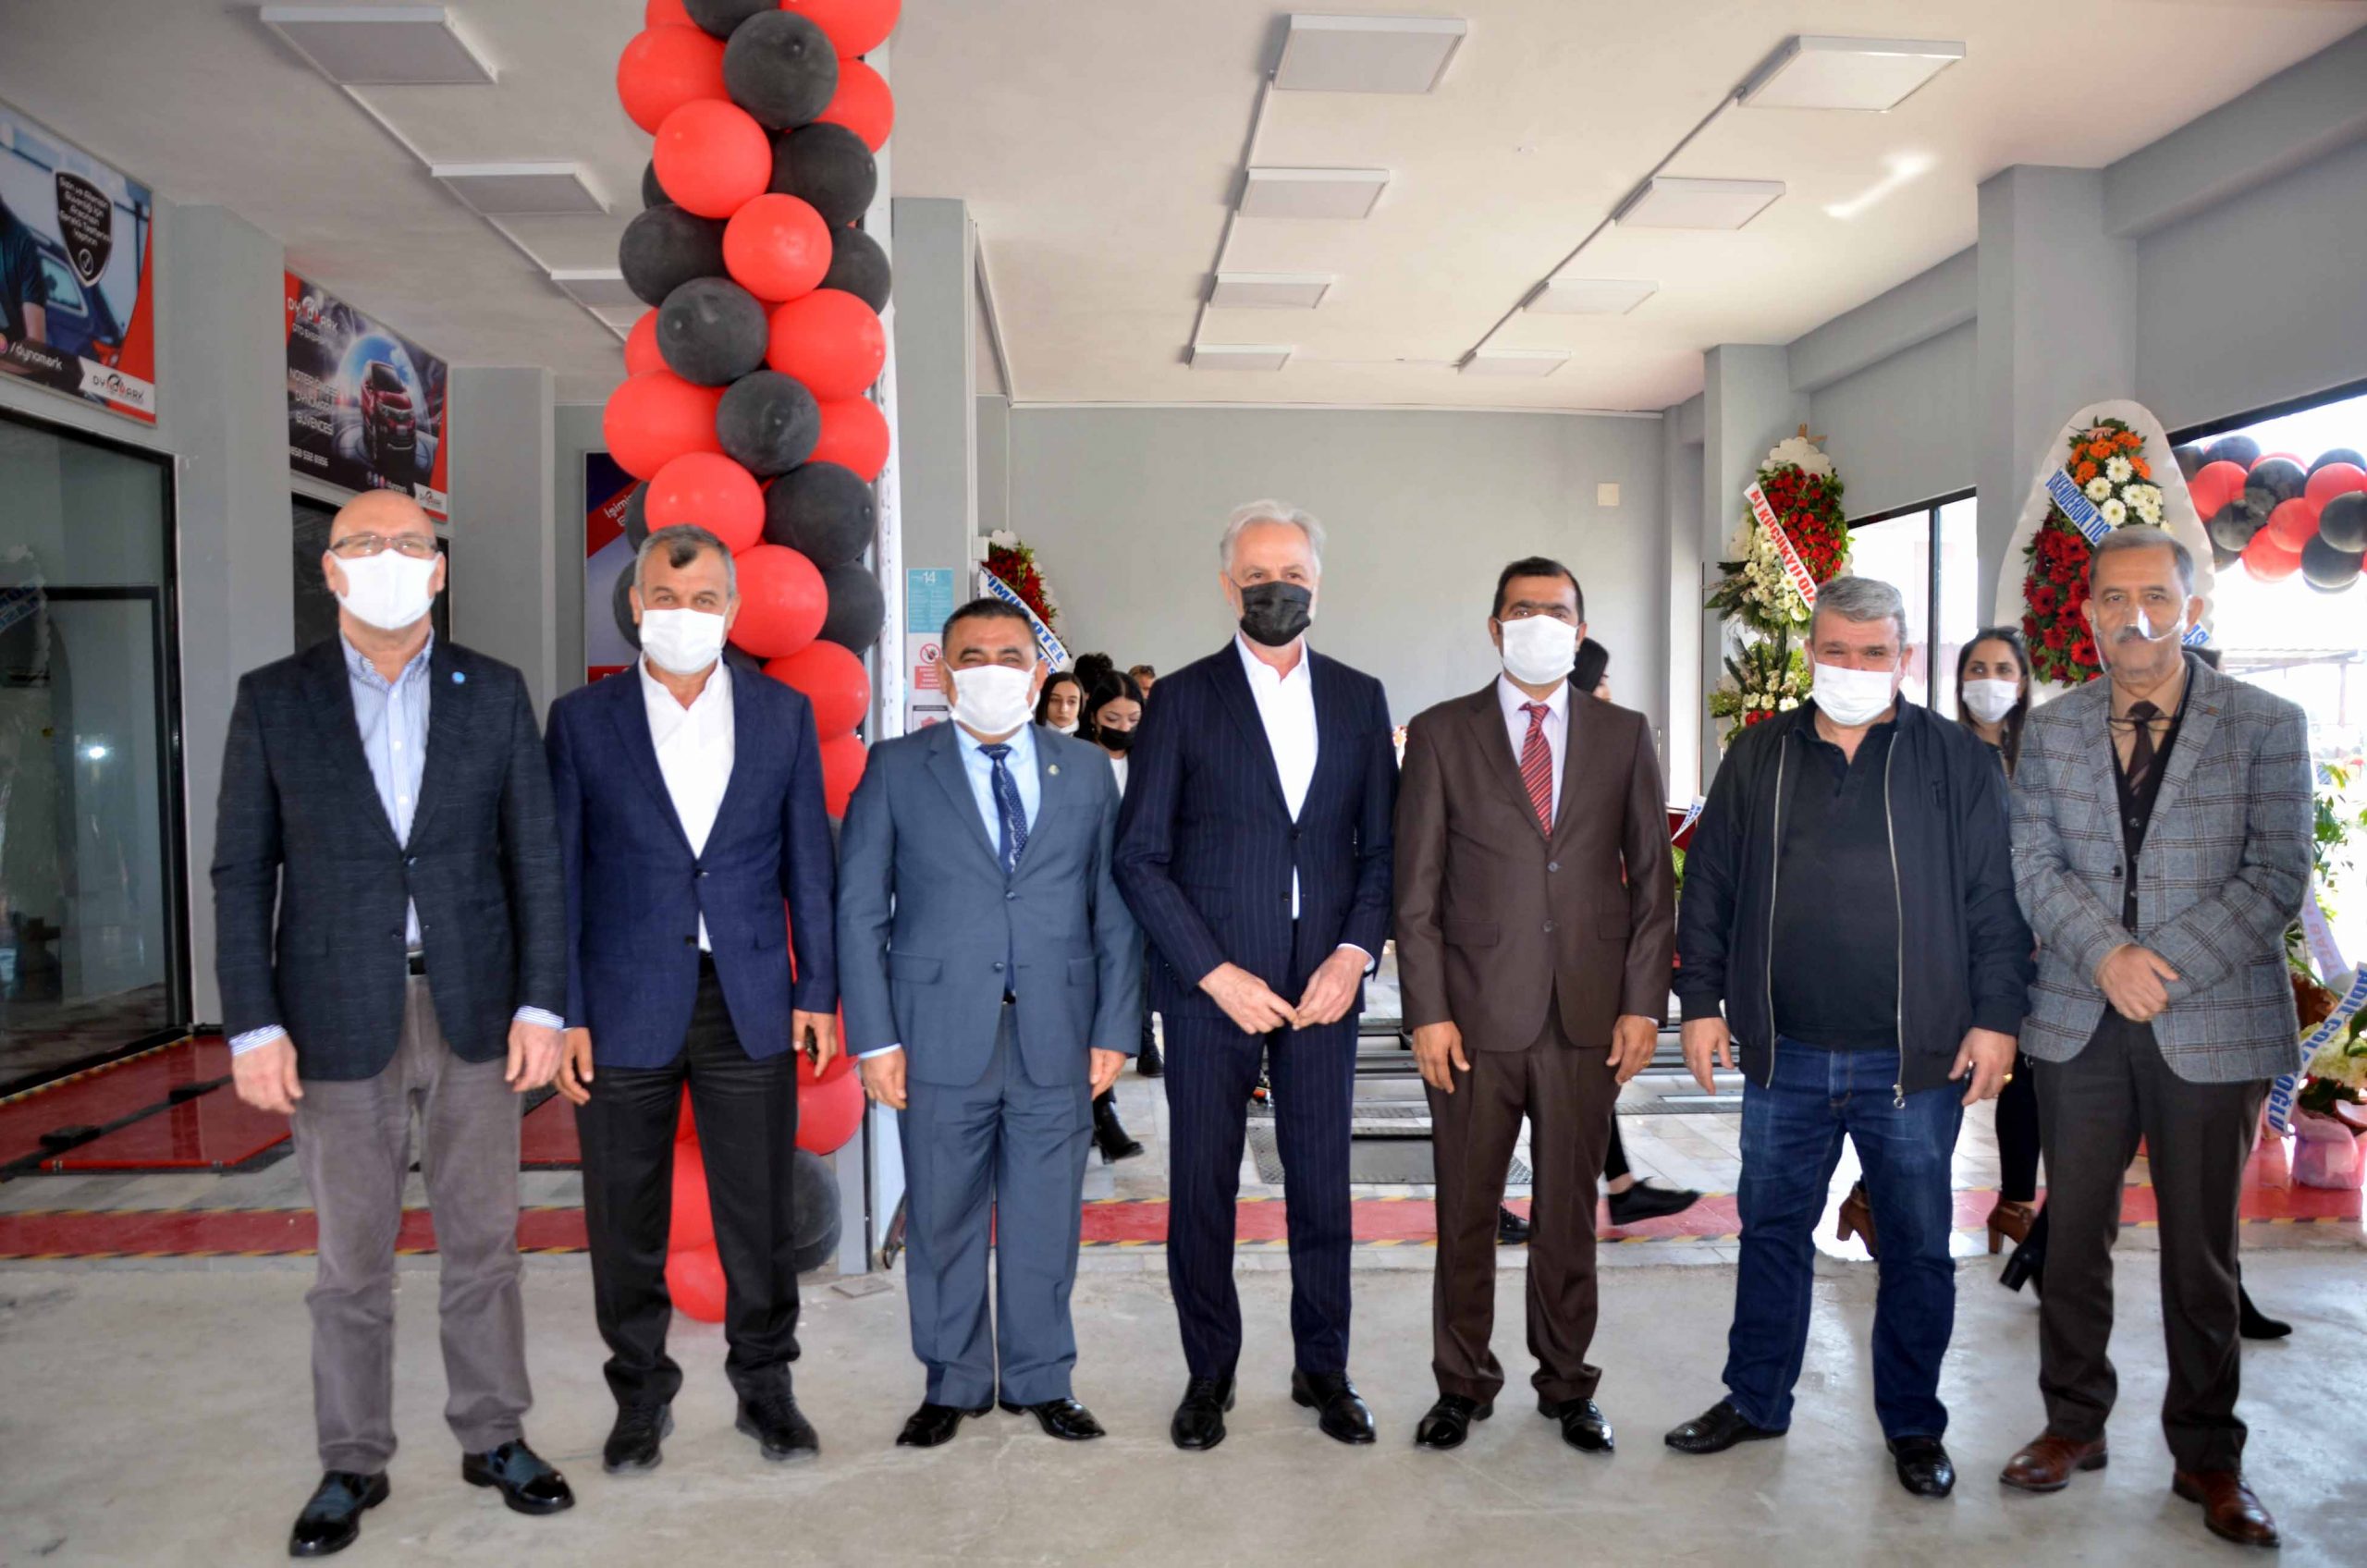 İTSO Yönetim Kurulu Üyeleri Dynomark Auto Ekspertiz’in Açılışına katıldı